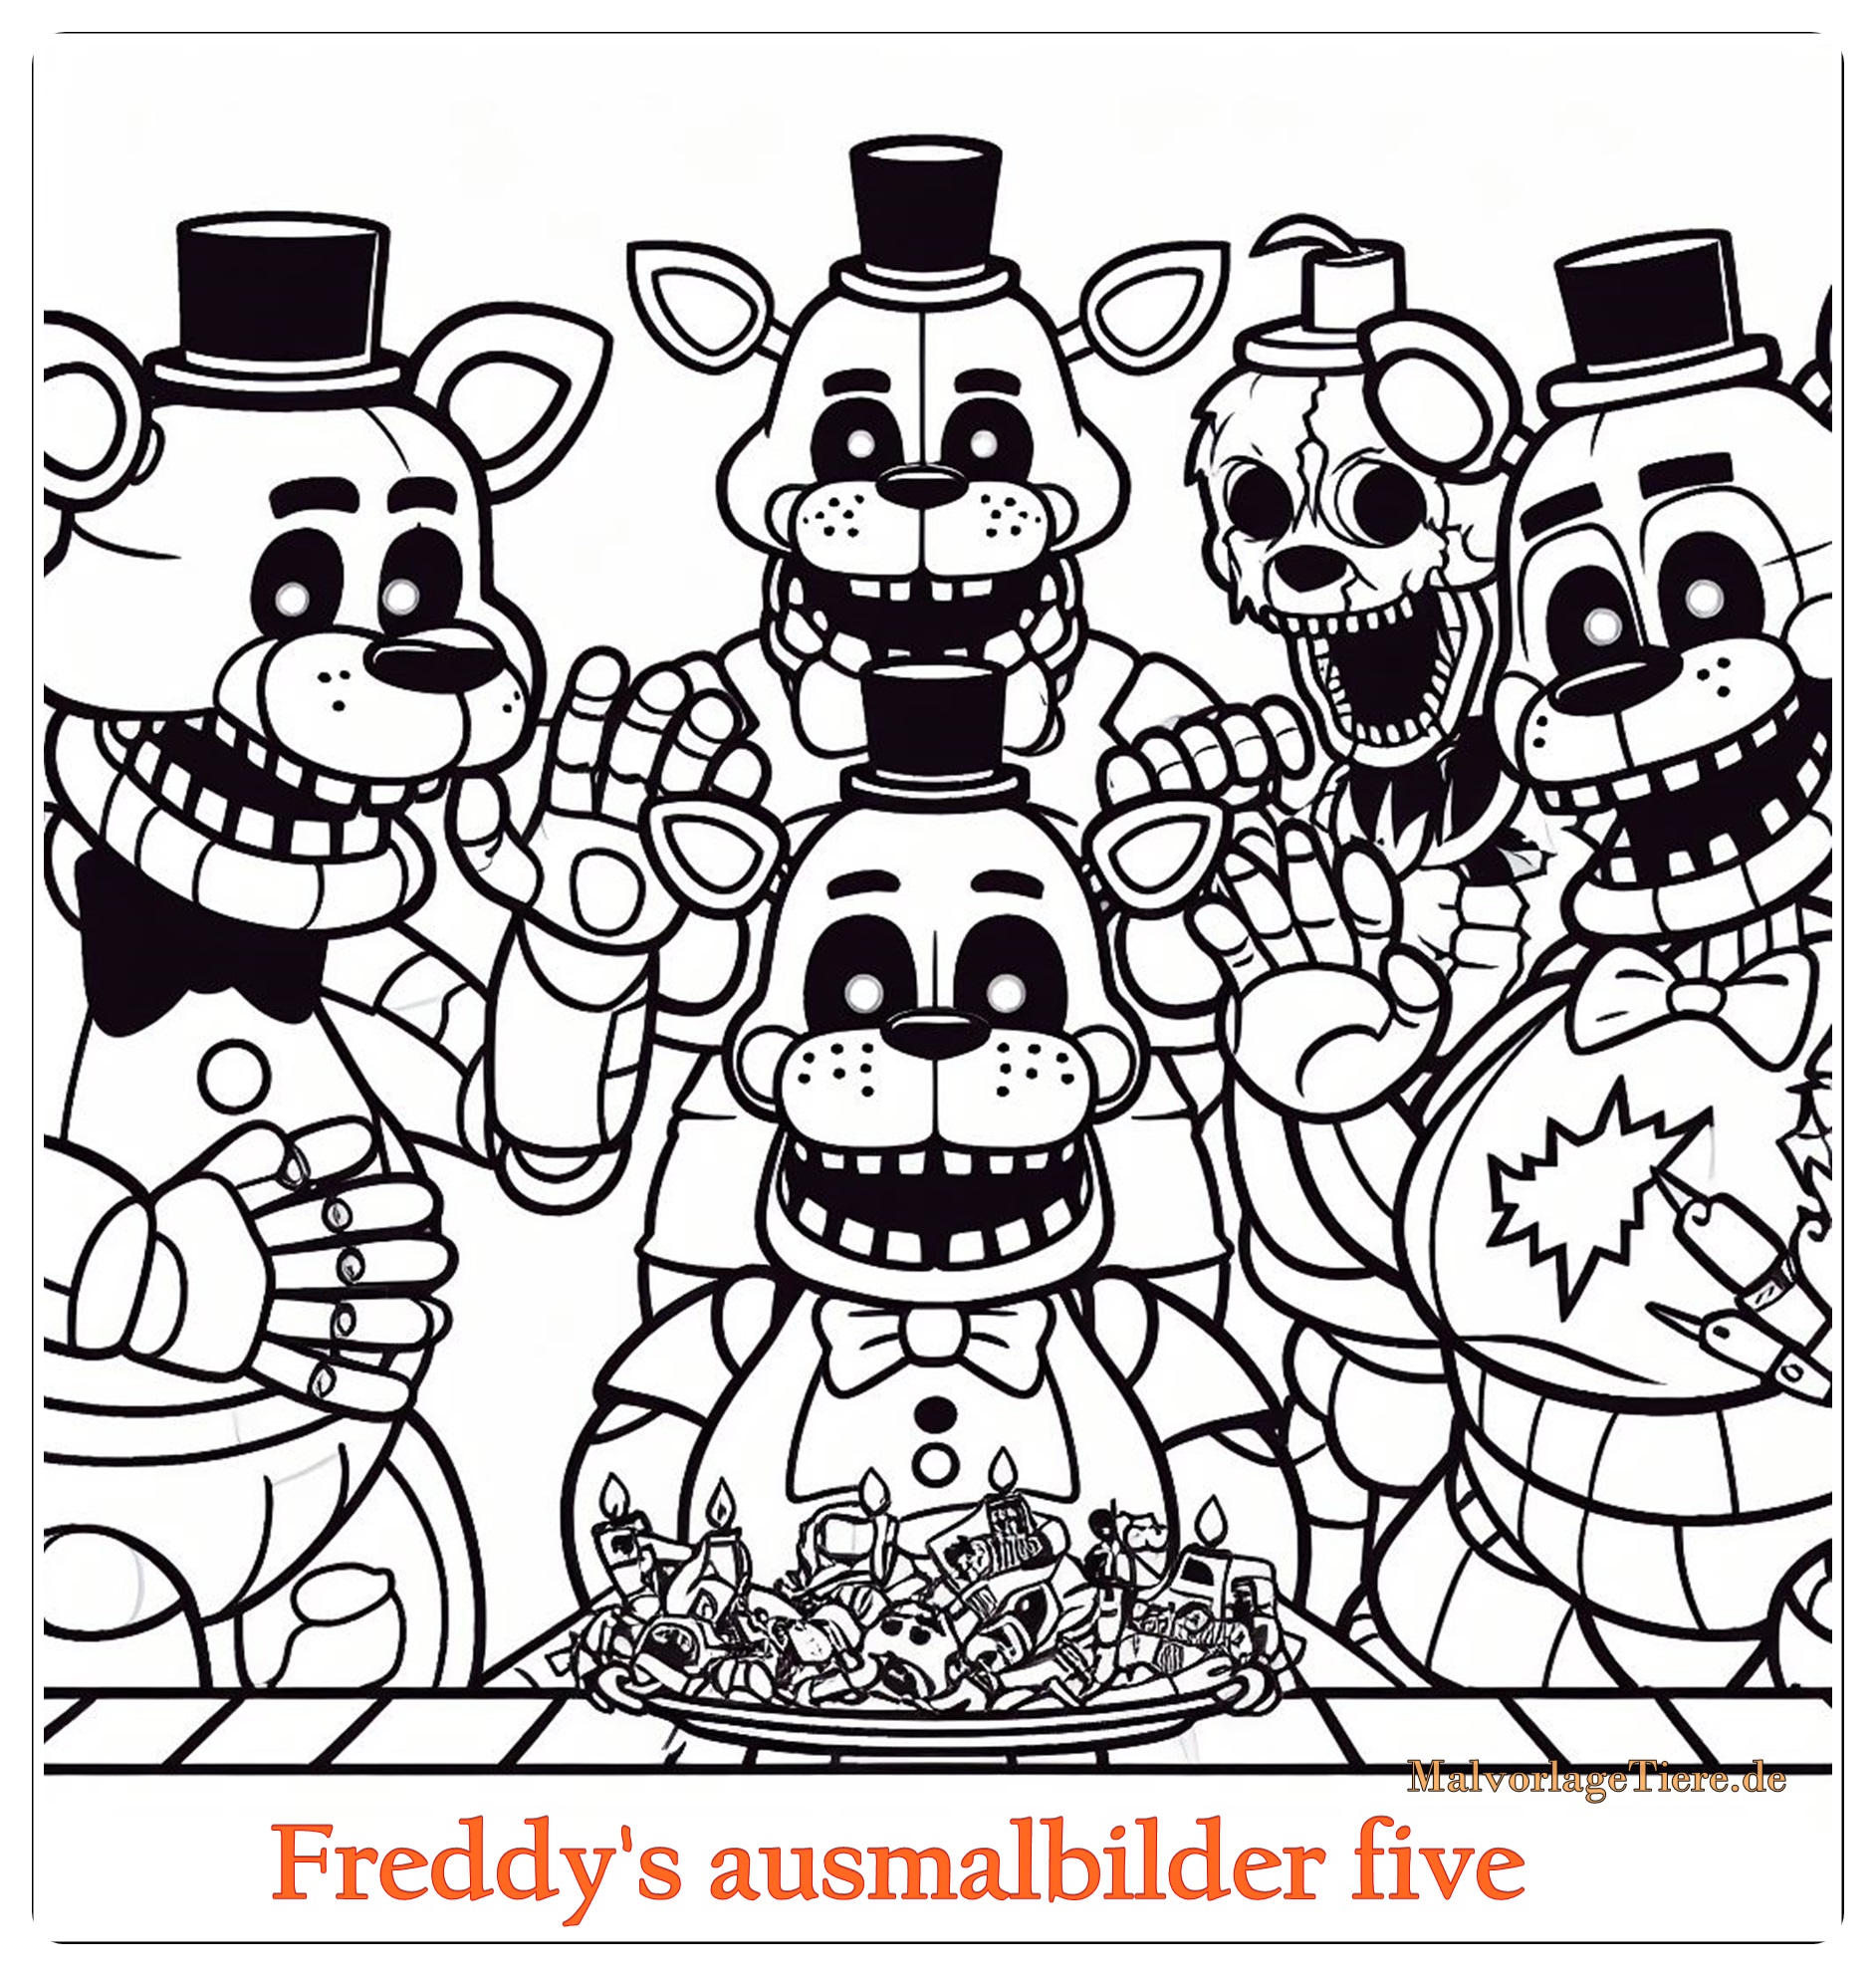 Freddy's ausmalbilder five nights 02 by malvorlagetiere.de